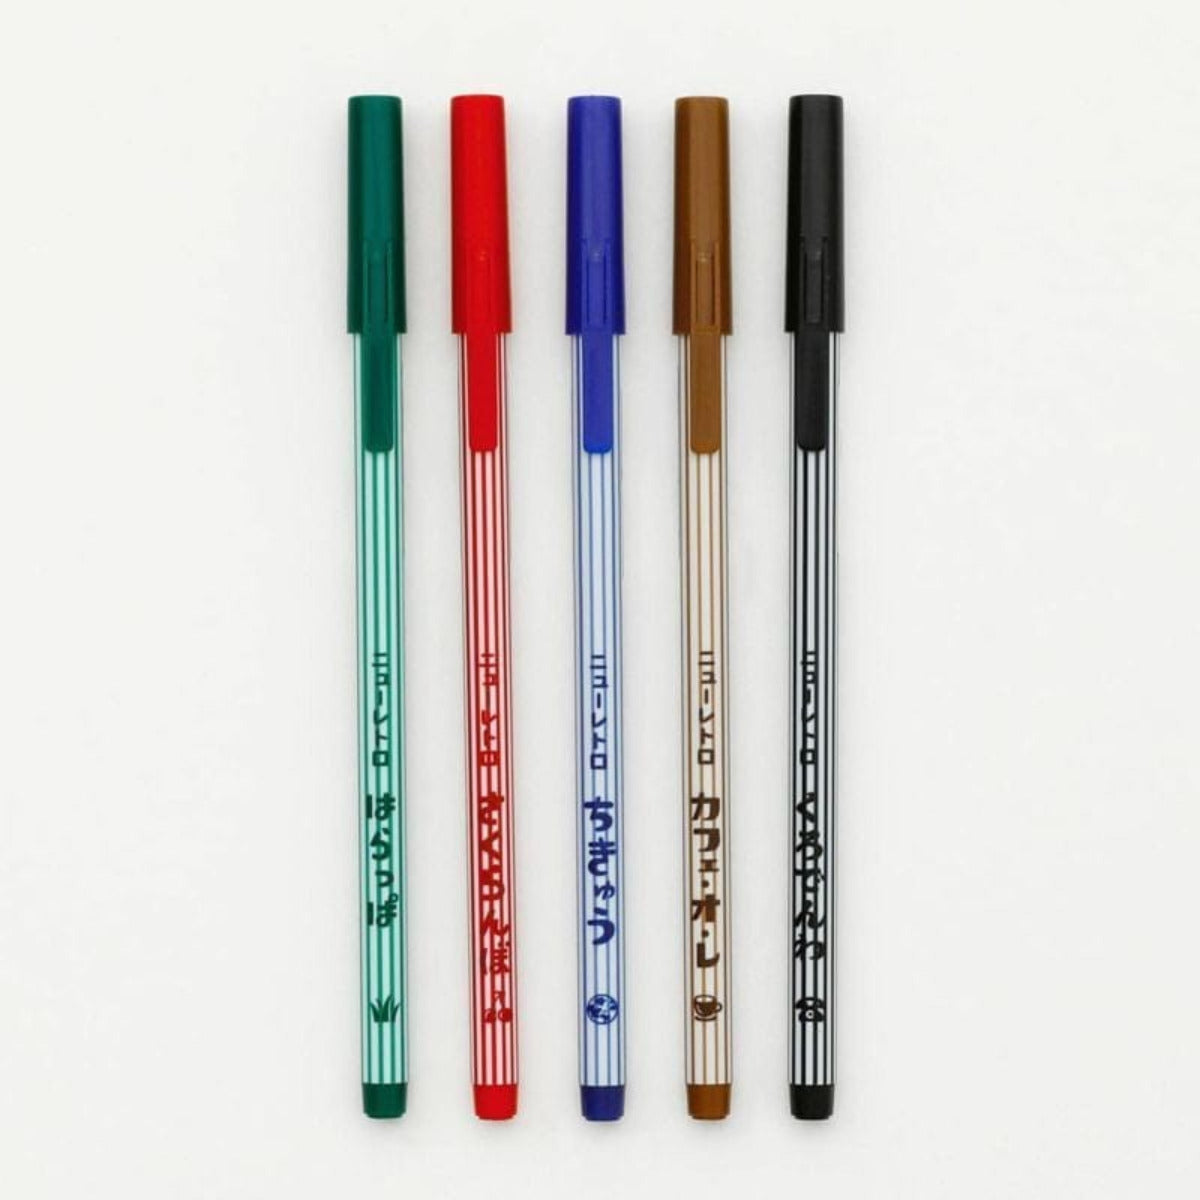 Hightide - Good Children's Color Pen Set of 5 - Statonary & Office - DANSKmadeforrooms